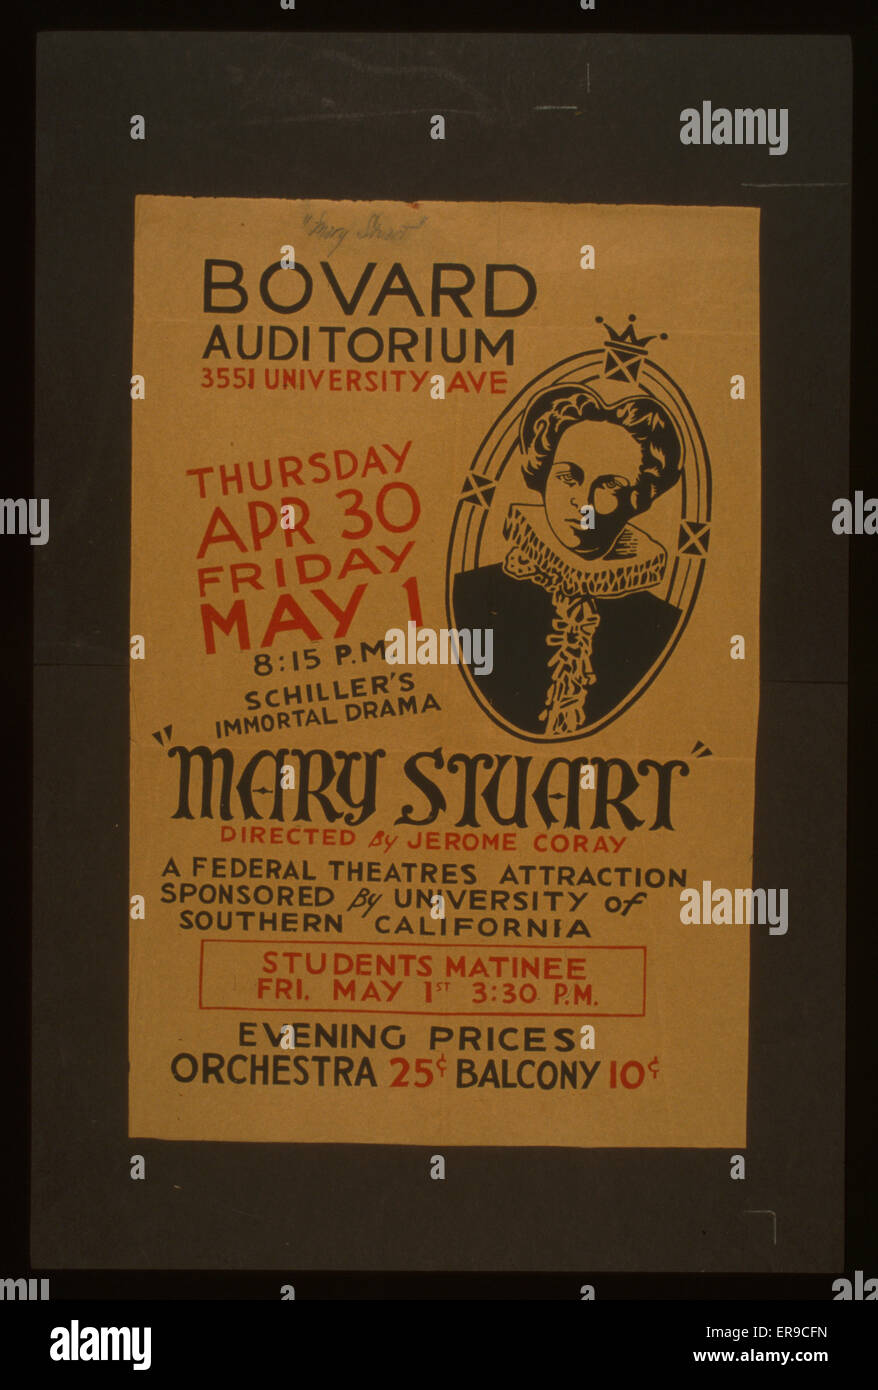 Mary Stuart dirigida por Jerome Coray Mary Stuart dirigida por Foto de stock